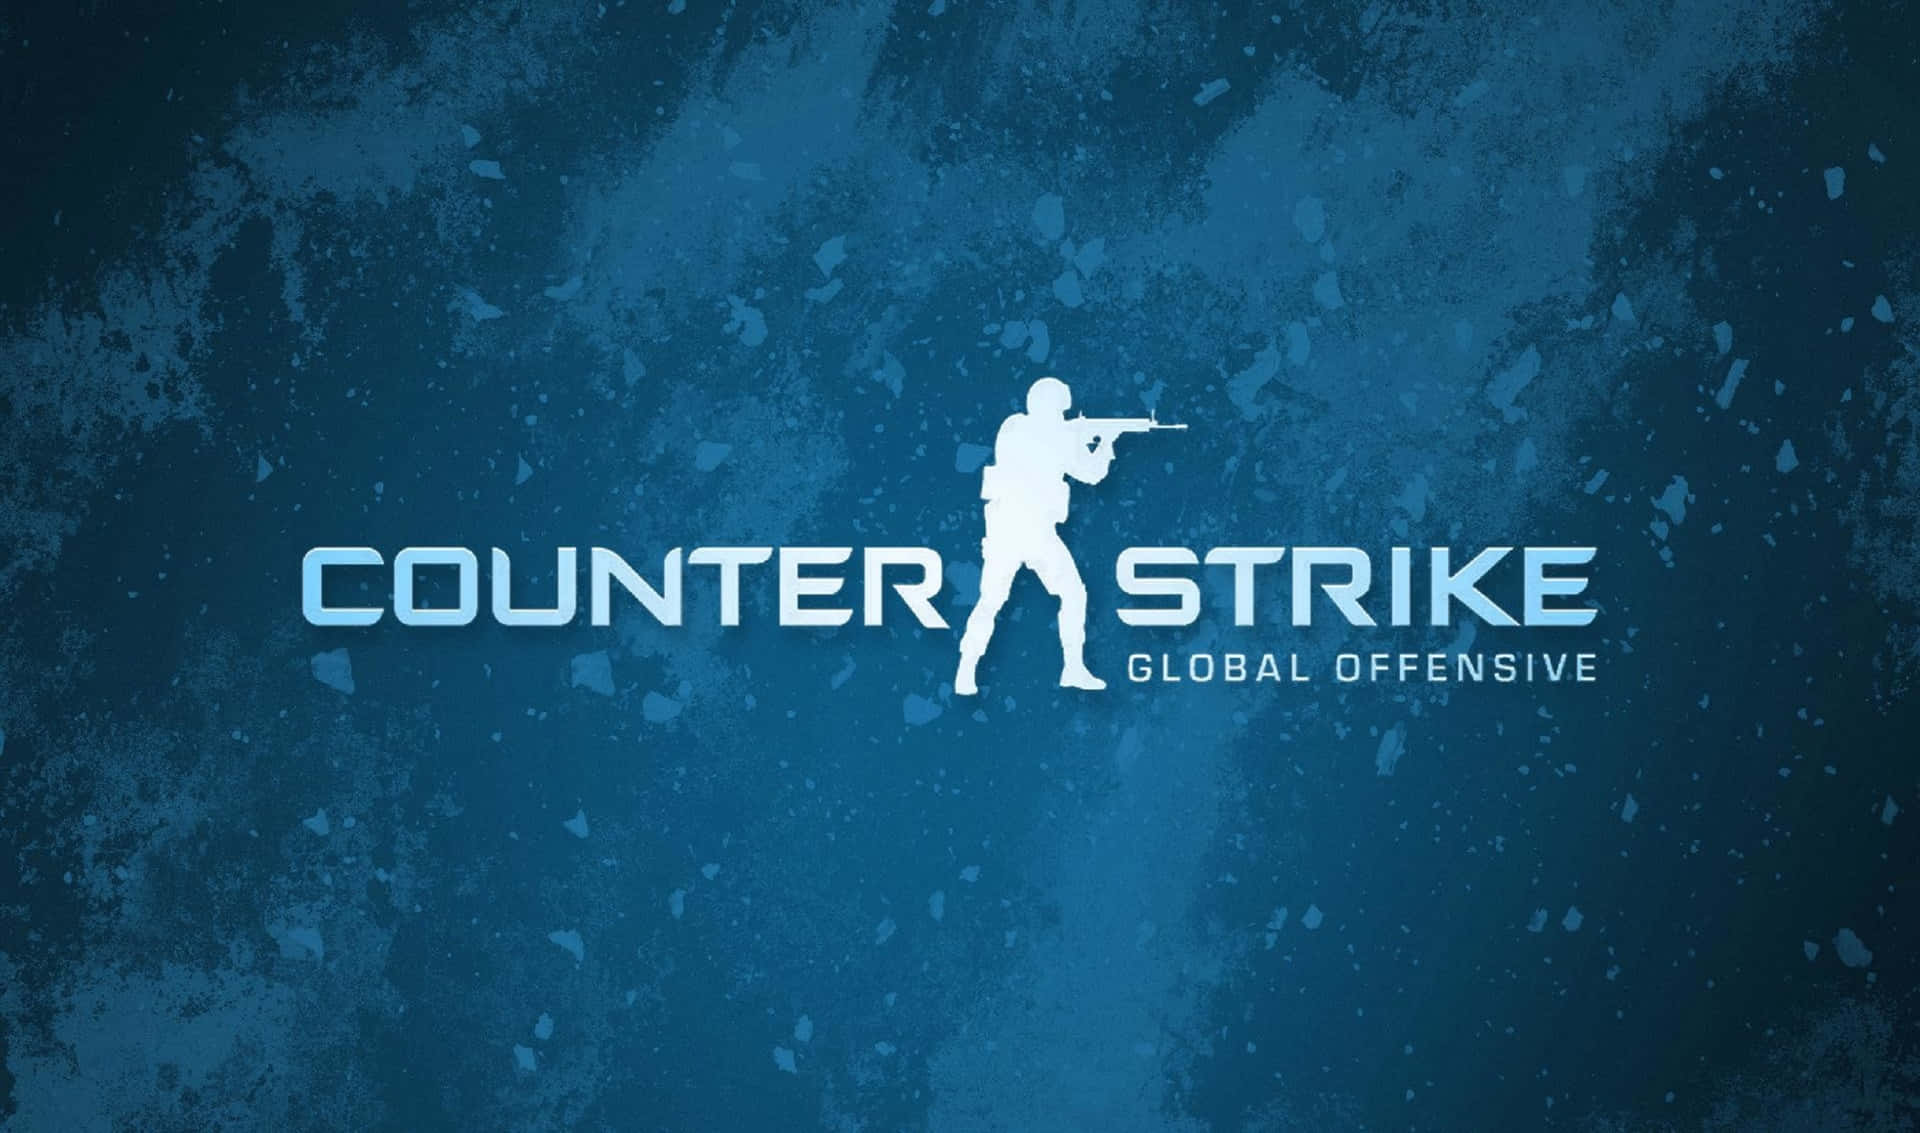 Igiocatori Professionisti Competono Intensamente In Counter-strike Global Offensive.